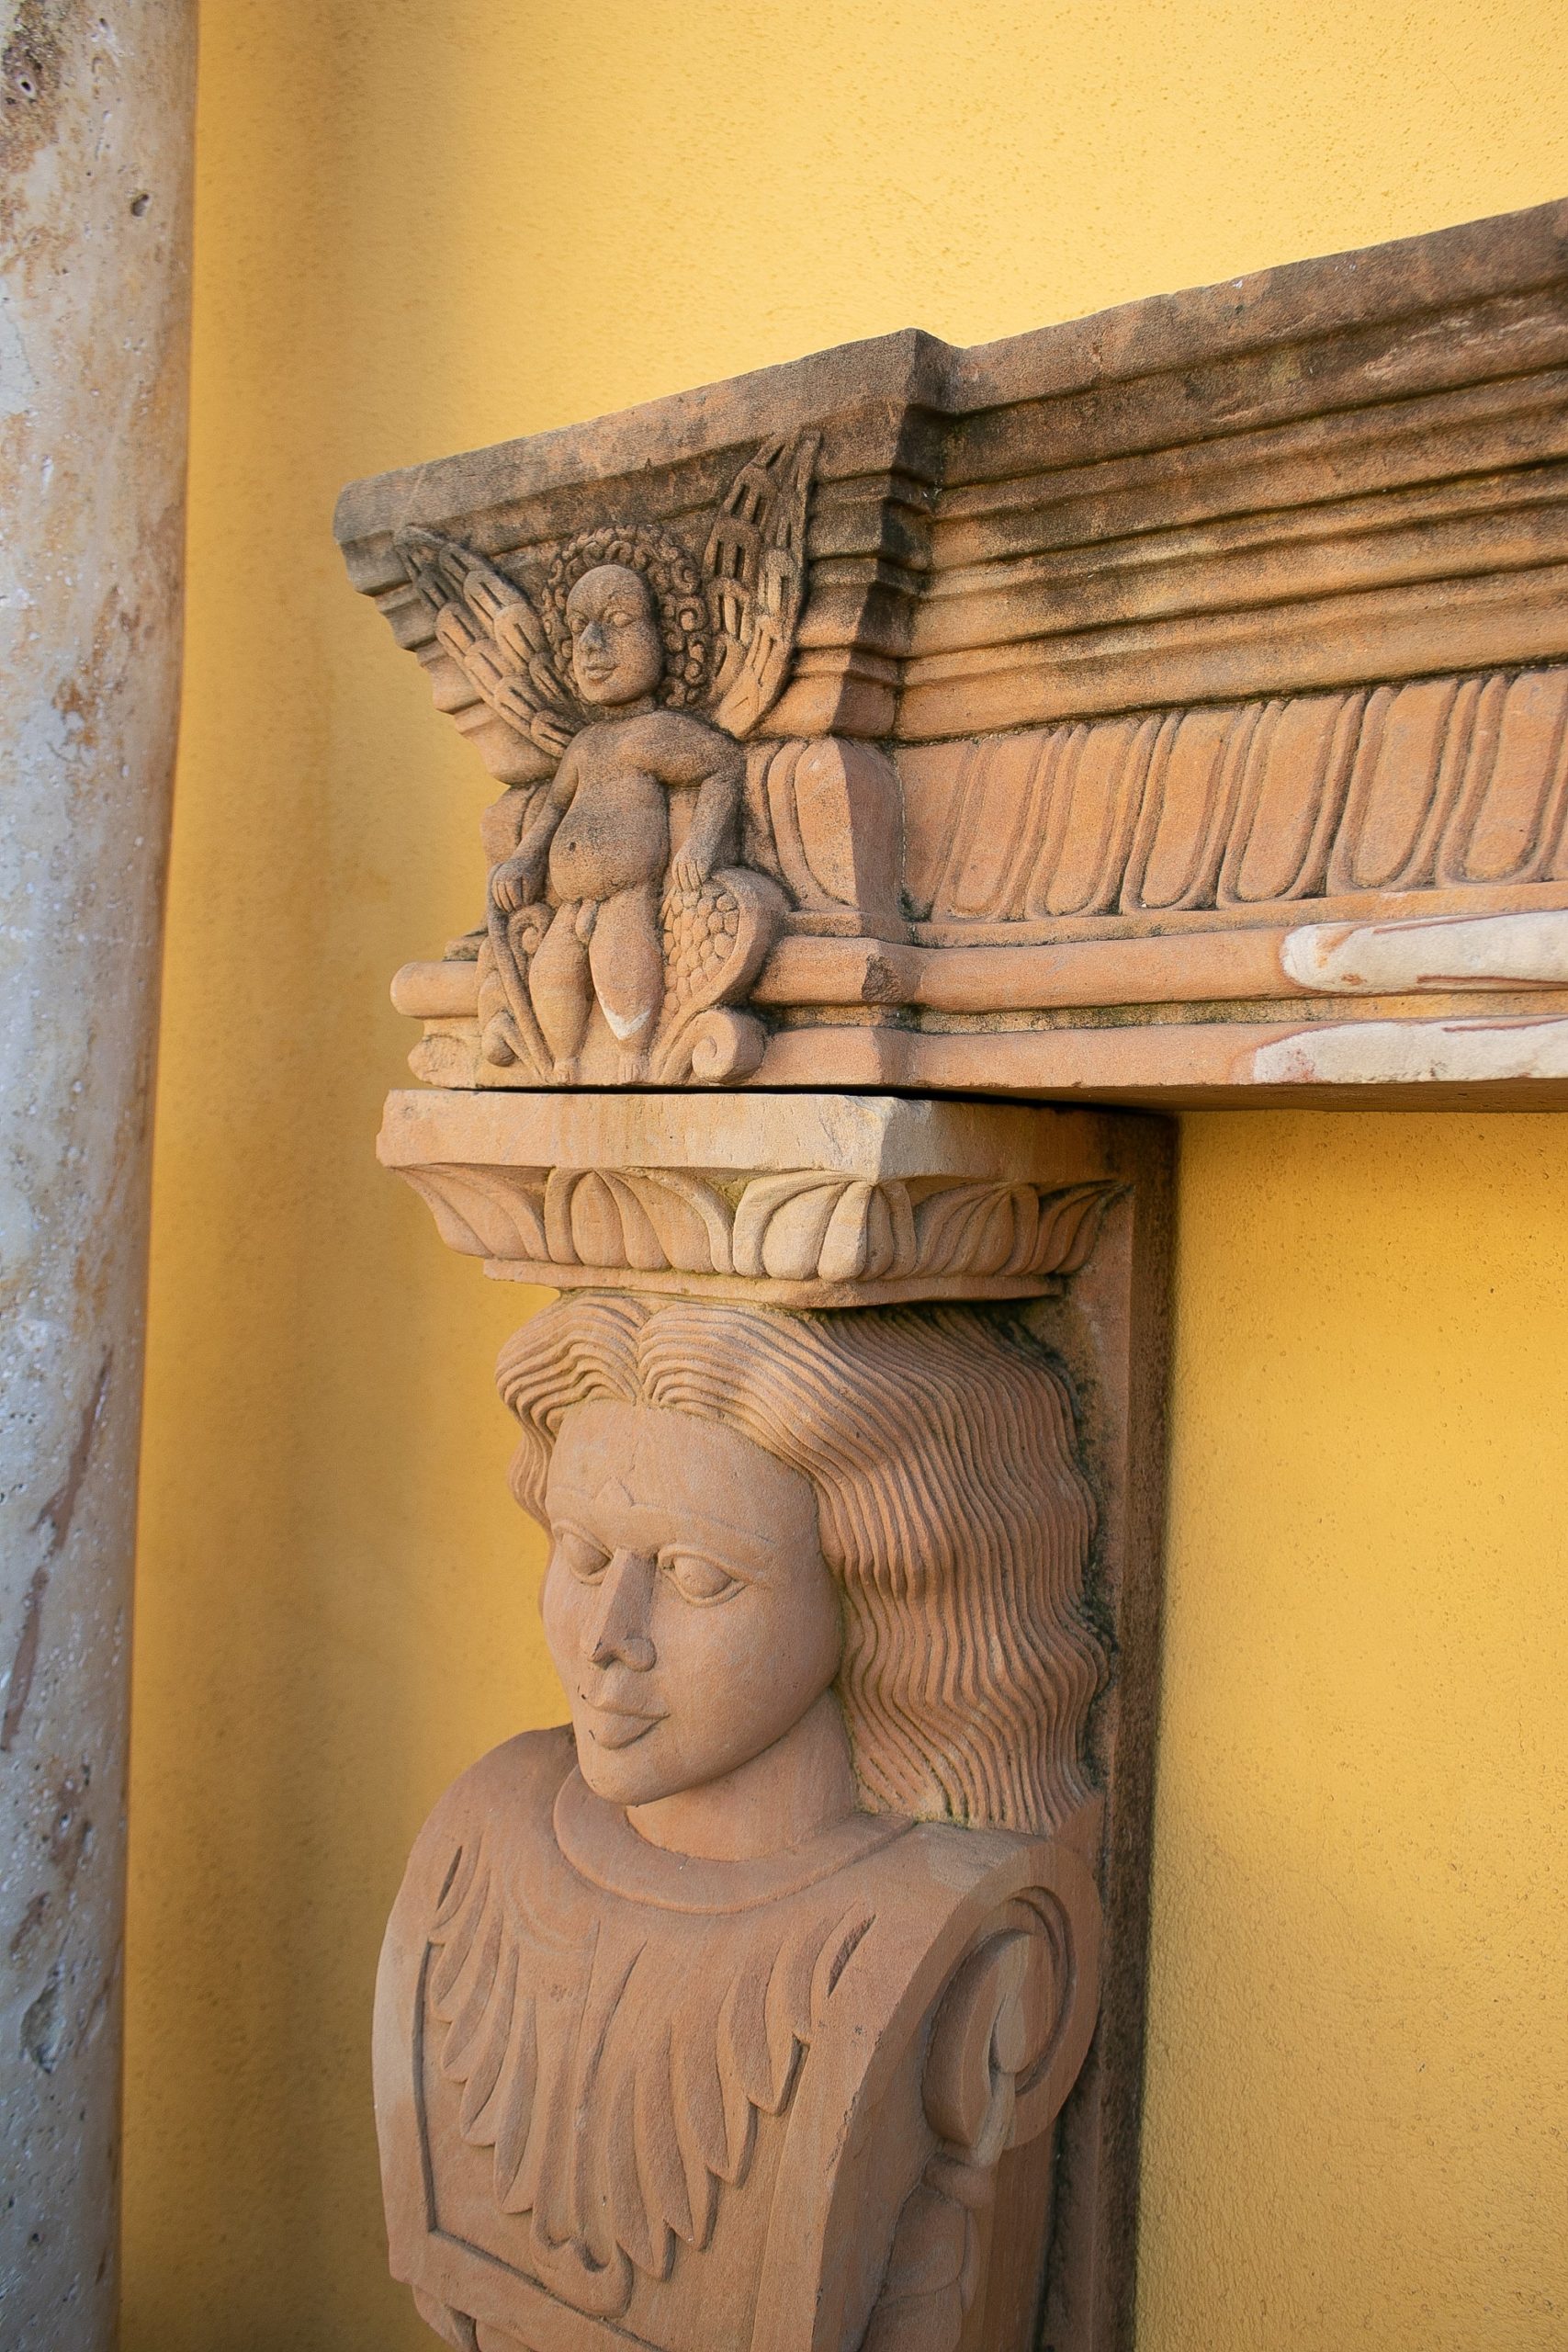 Manto de Chimenea de Piedra Arenisca Tallada a Mano con Pilastras de Cariátides, de la India, de los años 90